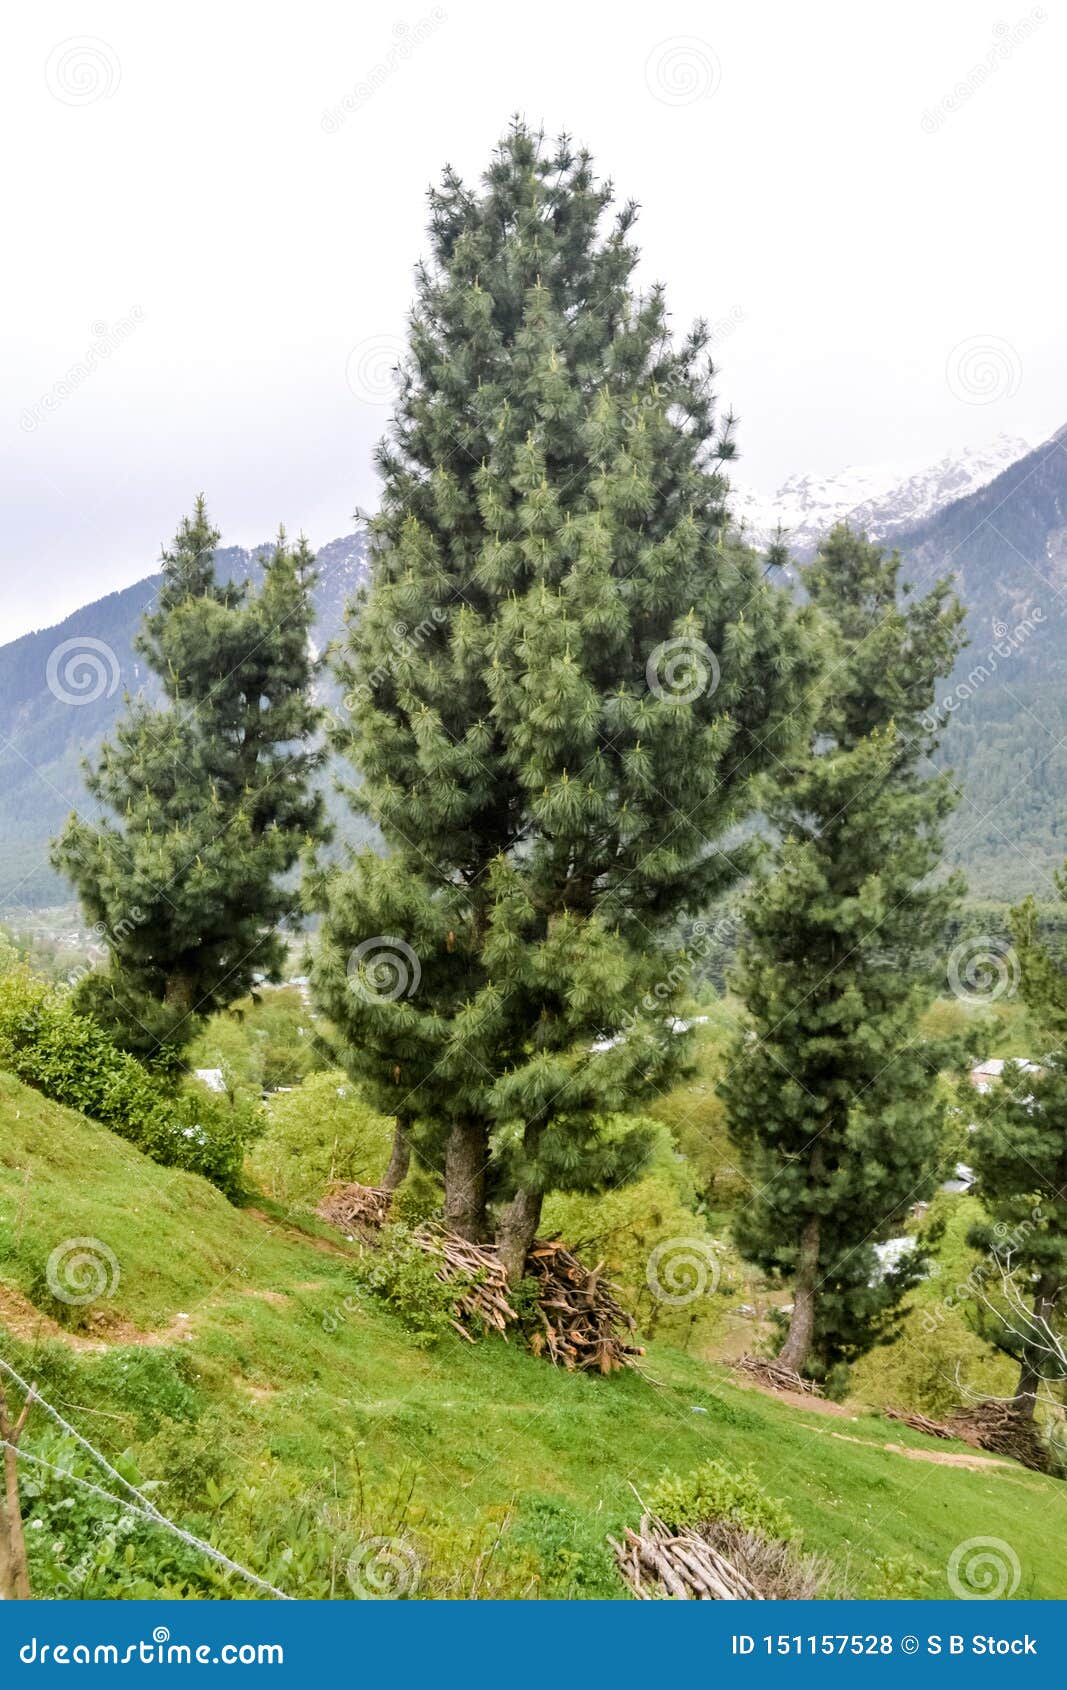 Top Of Deodar Cedar Cedrus Deodara Or Himalayan Cedar Stock Photography ...